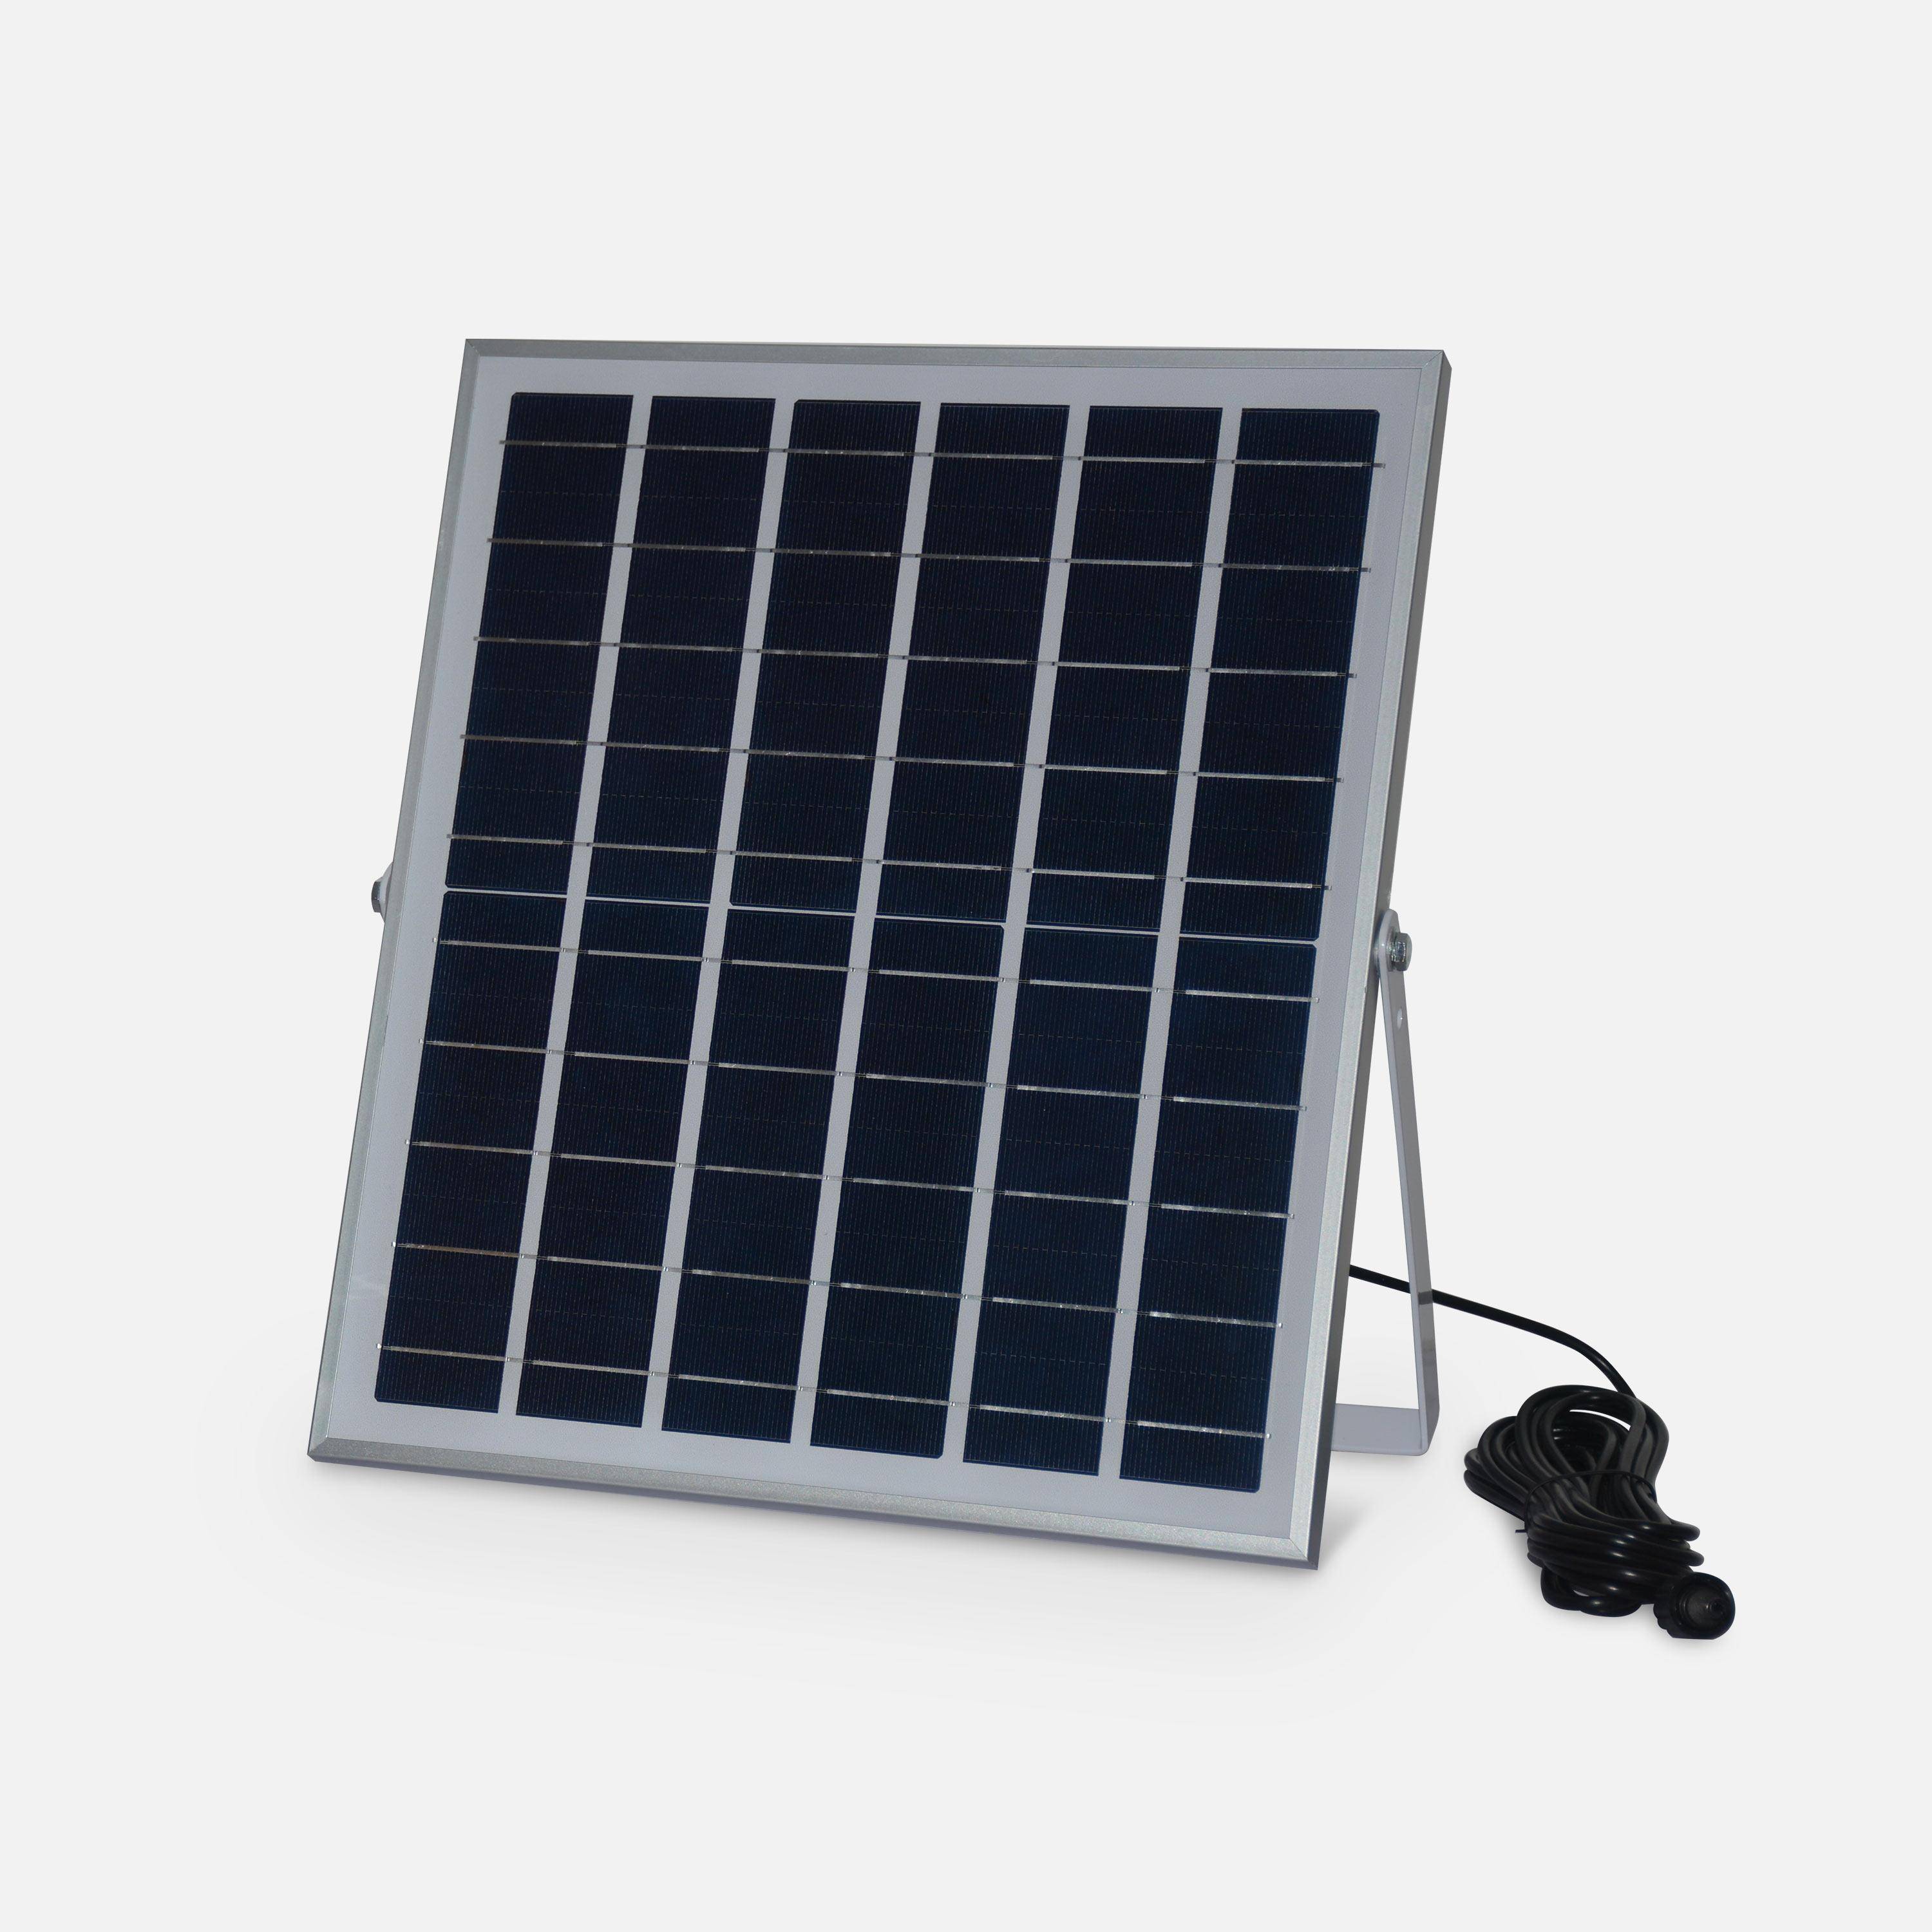 Projecteur solaire LED 40W avec panneau solaire télécommandé blanc chaud, lampe résistante à la pluie et autonome, spot extra puissant 1500 lumens équivalent 125W Photo4